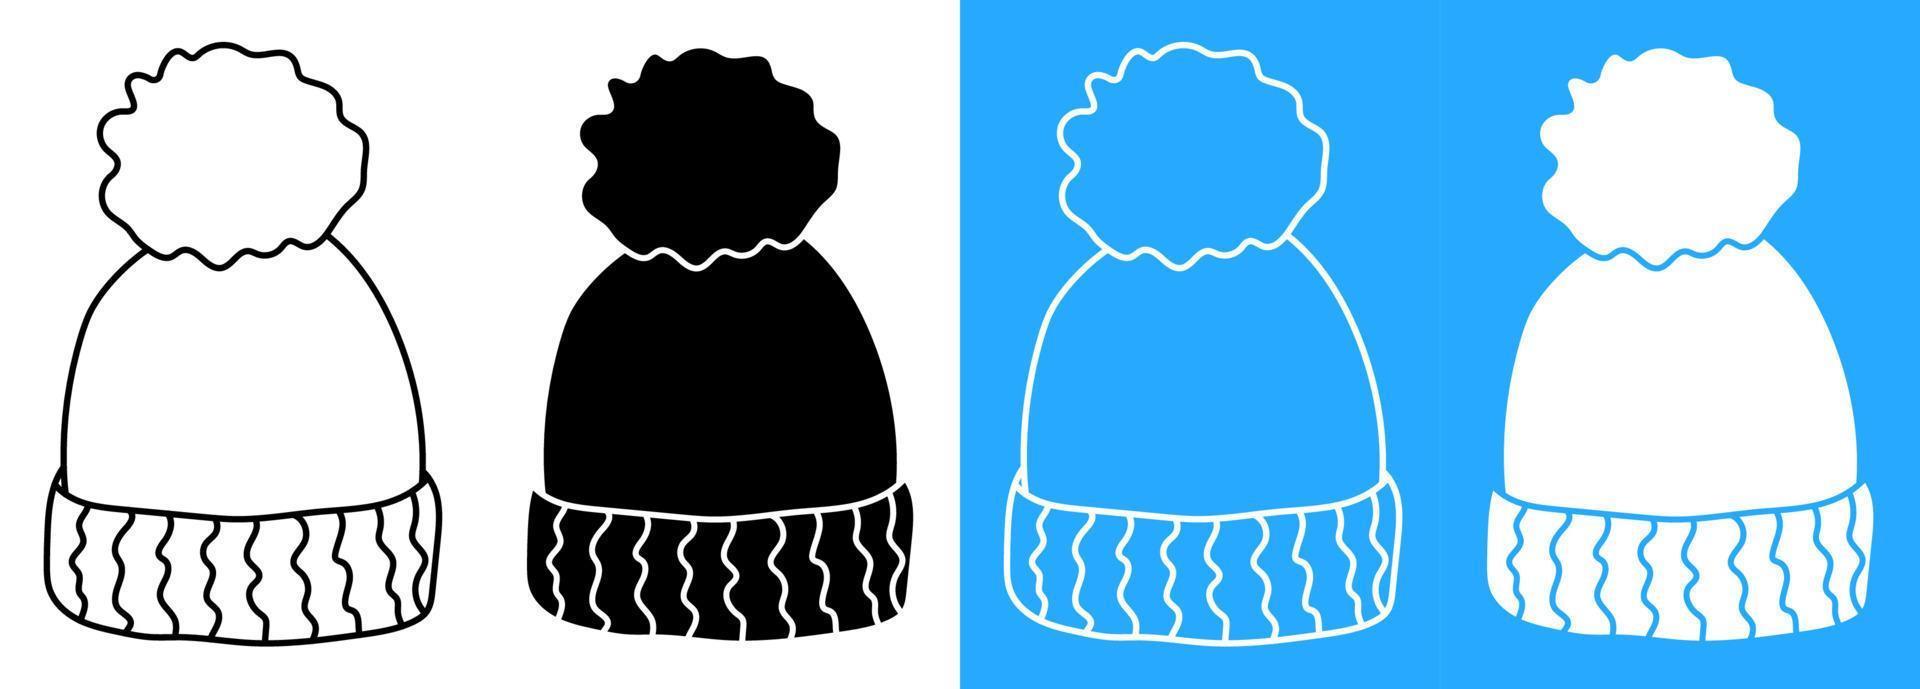 vinter- värma stickat ull hatt. vinter- Kläder för kall väder. omtänksam för de hälsa av barn. vektor ikon